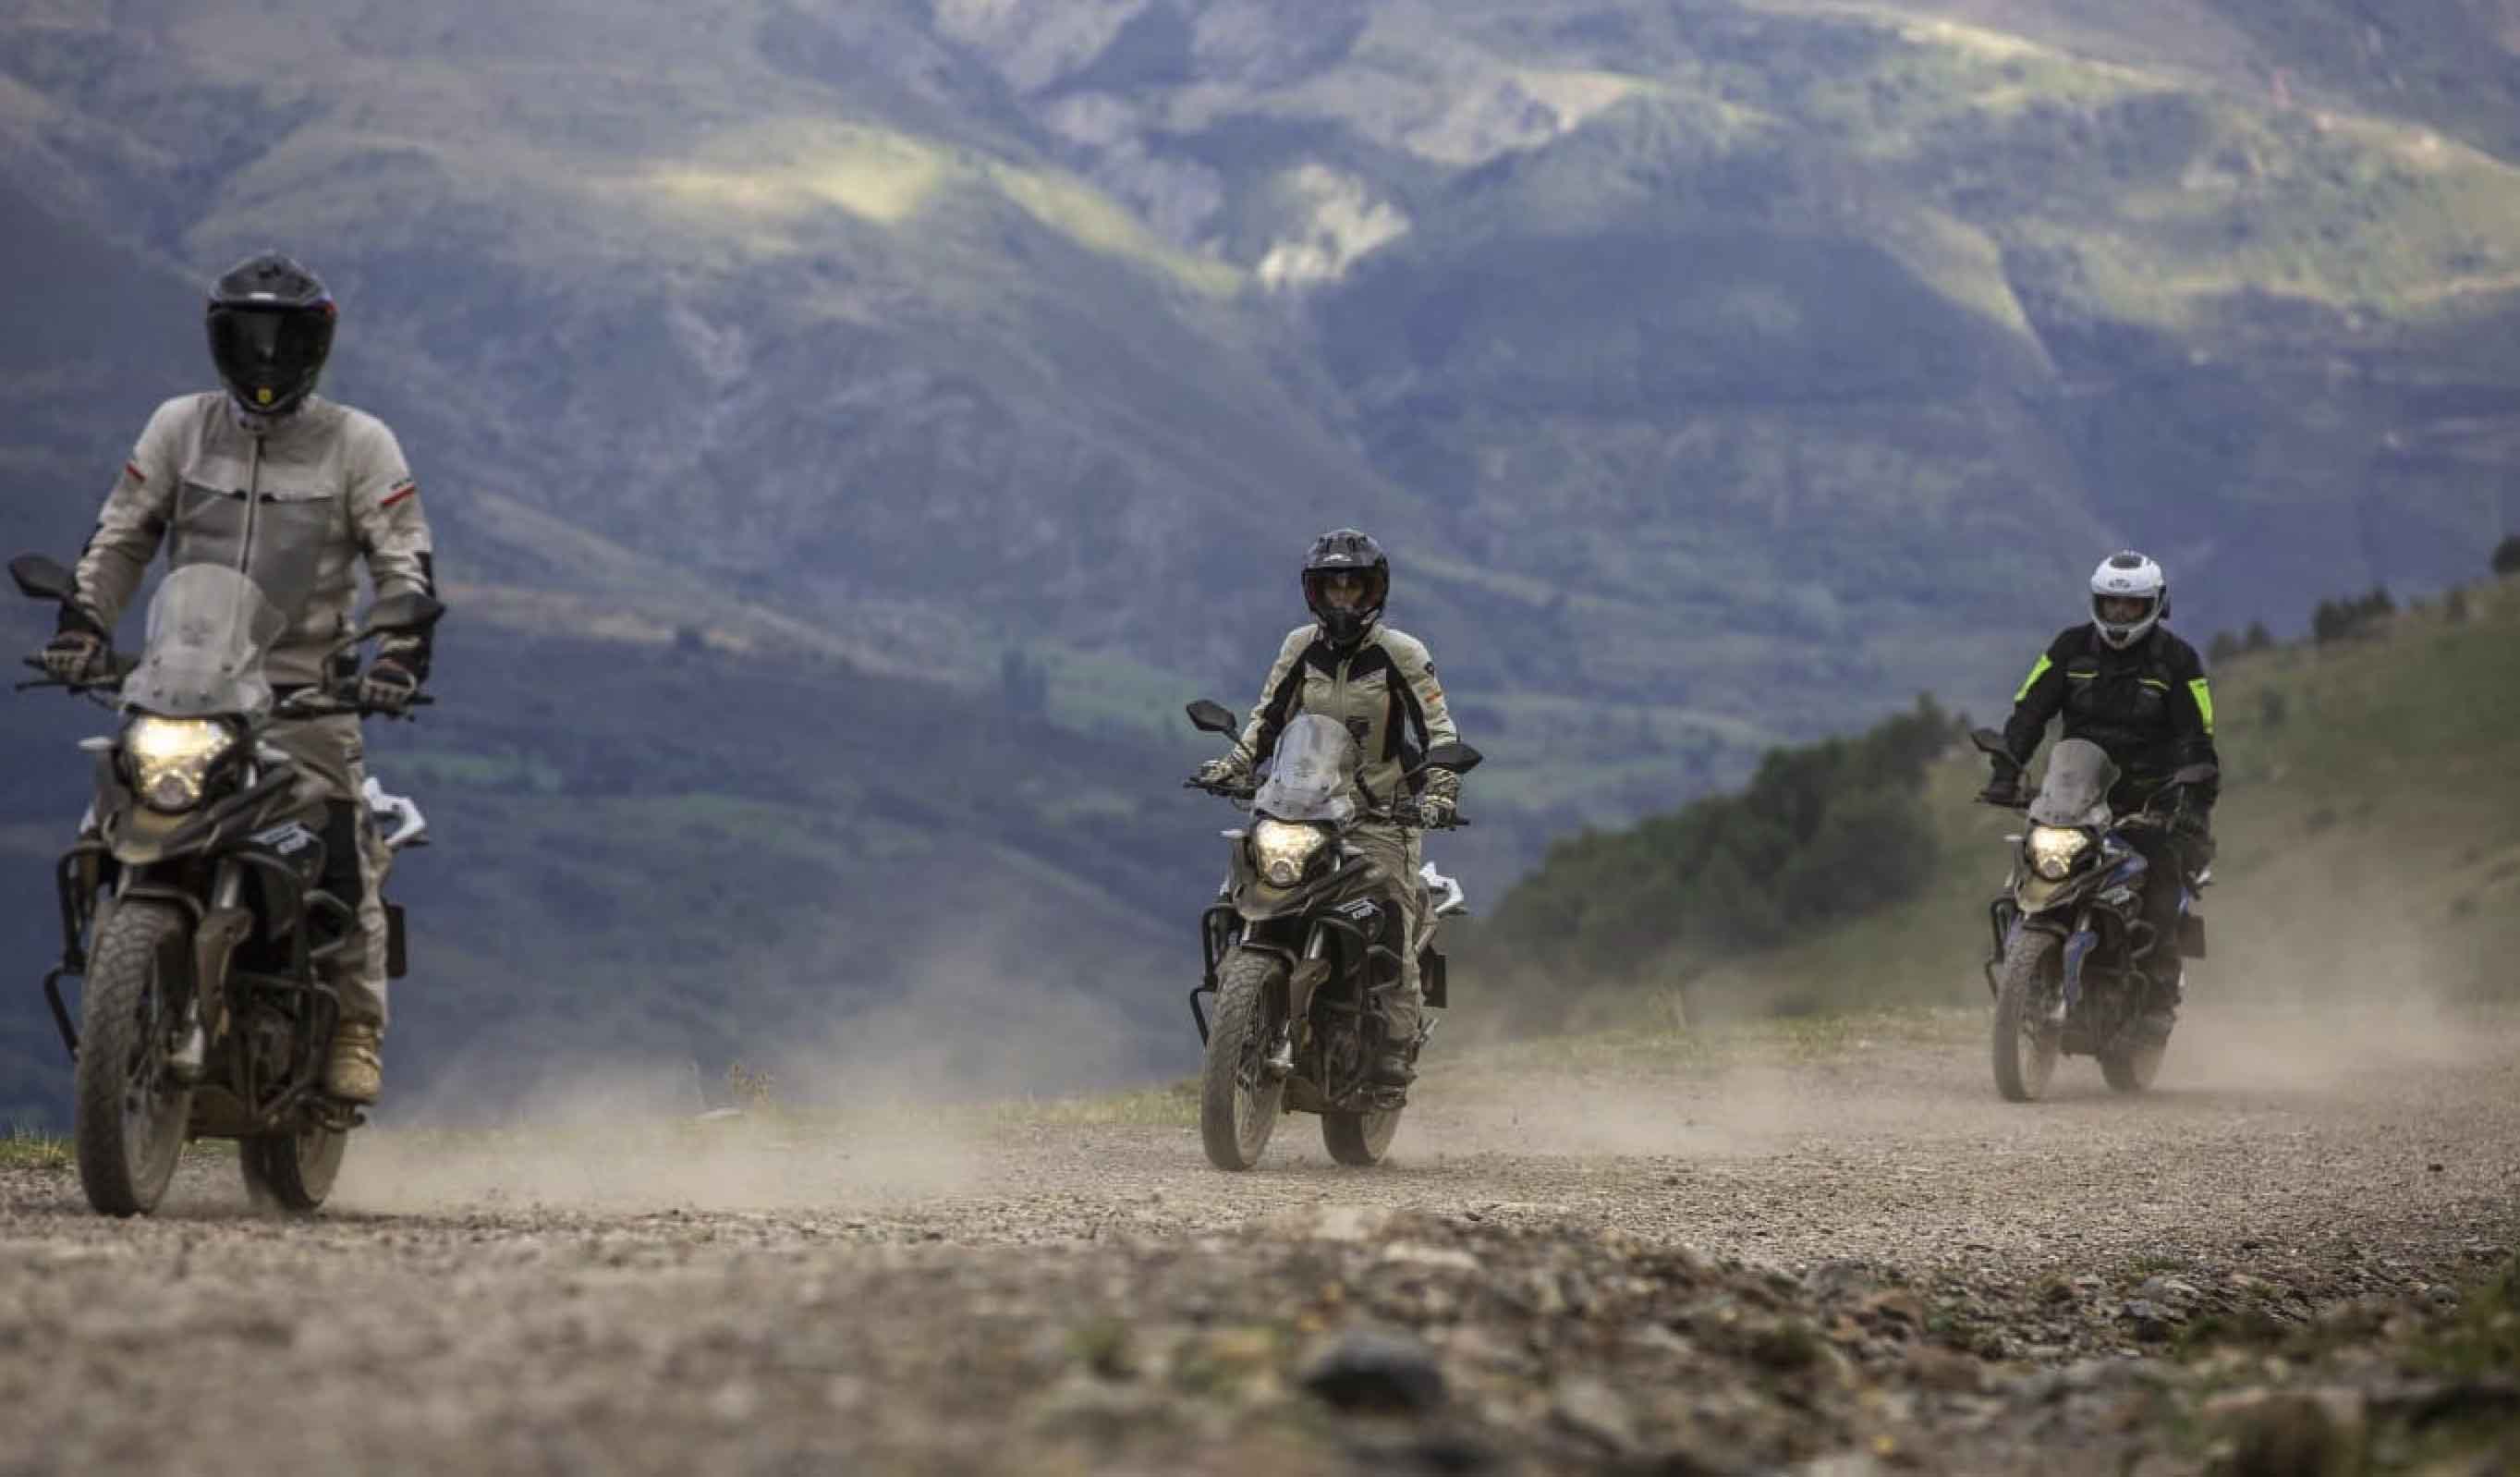 macbor montana xr3, moto trail, moto maxitrail, adventure, motos bordoy, enduro, moto mixta enduro, moto barata, viaje en moto,